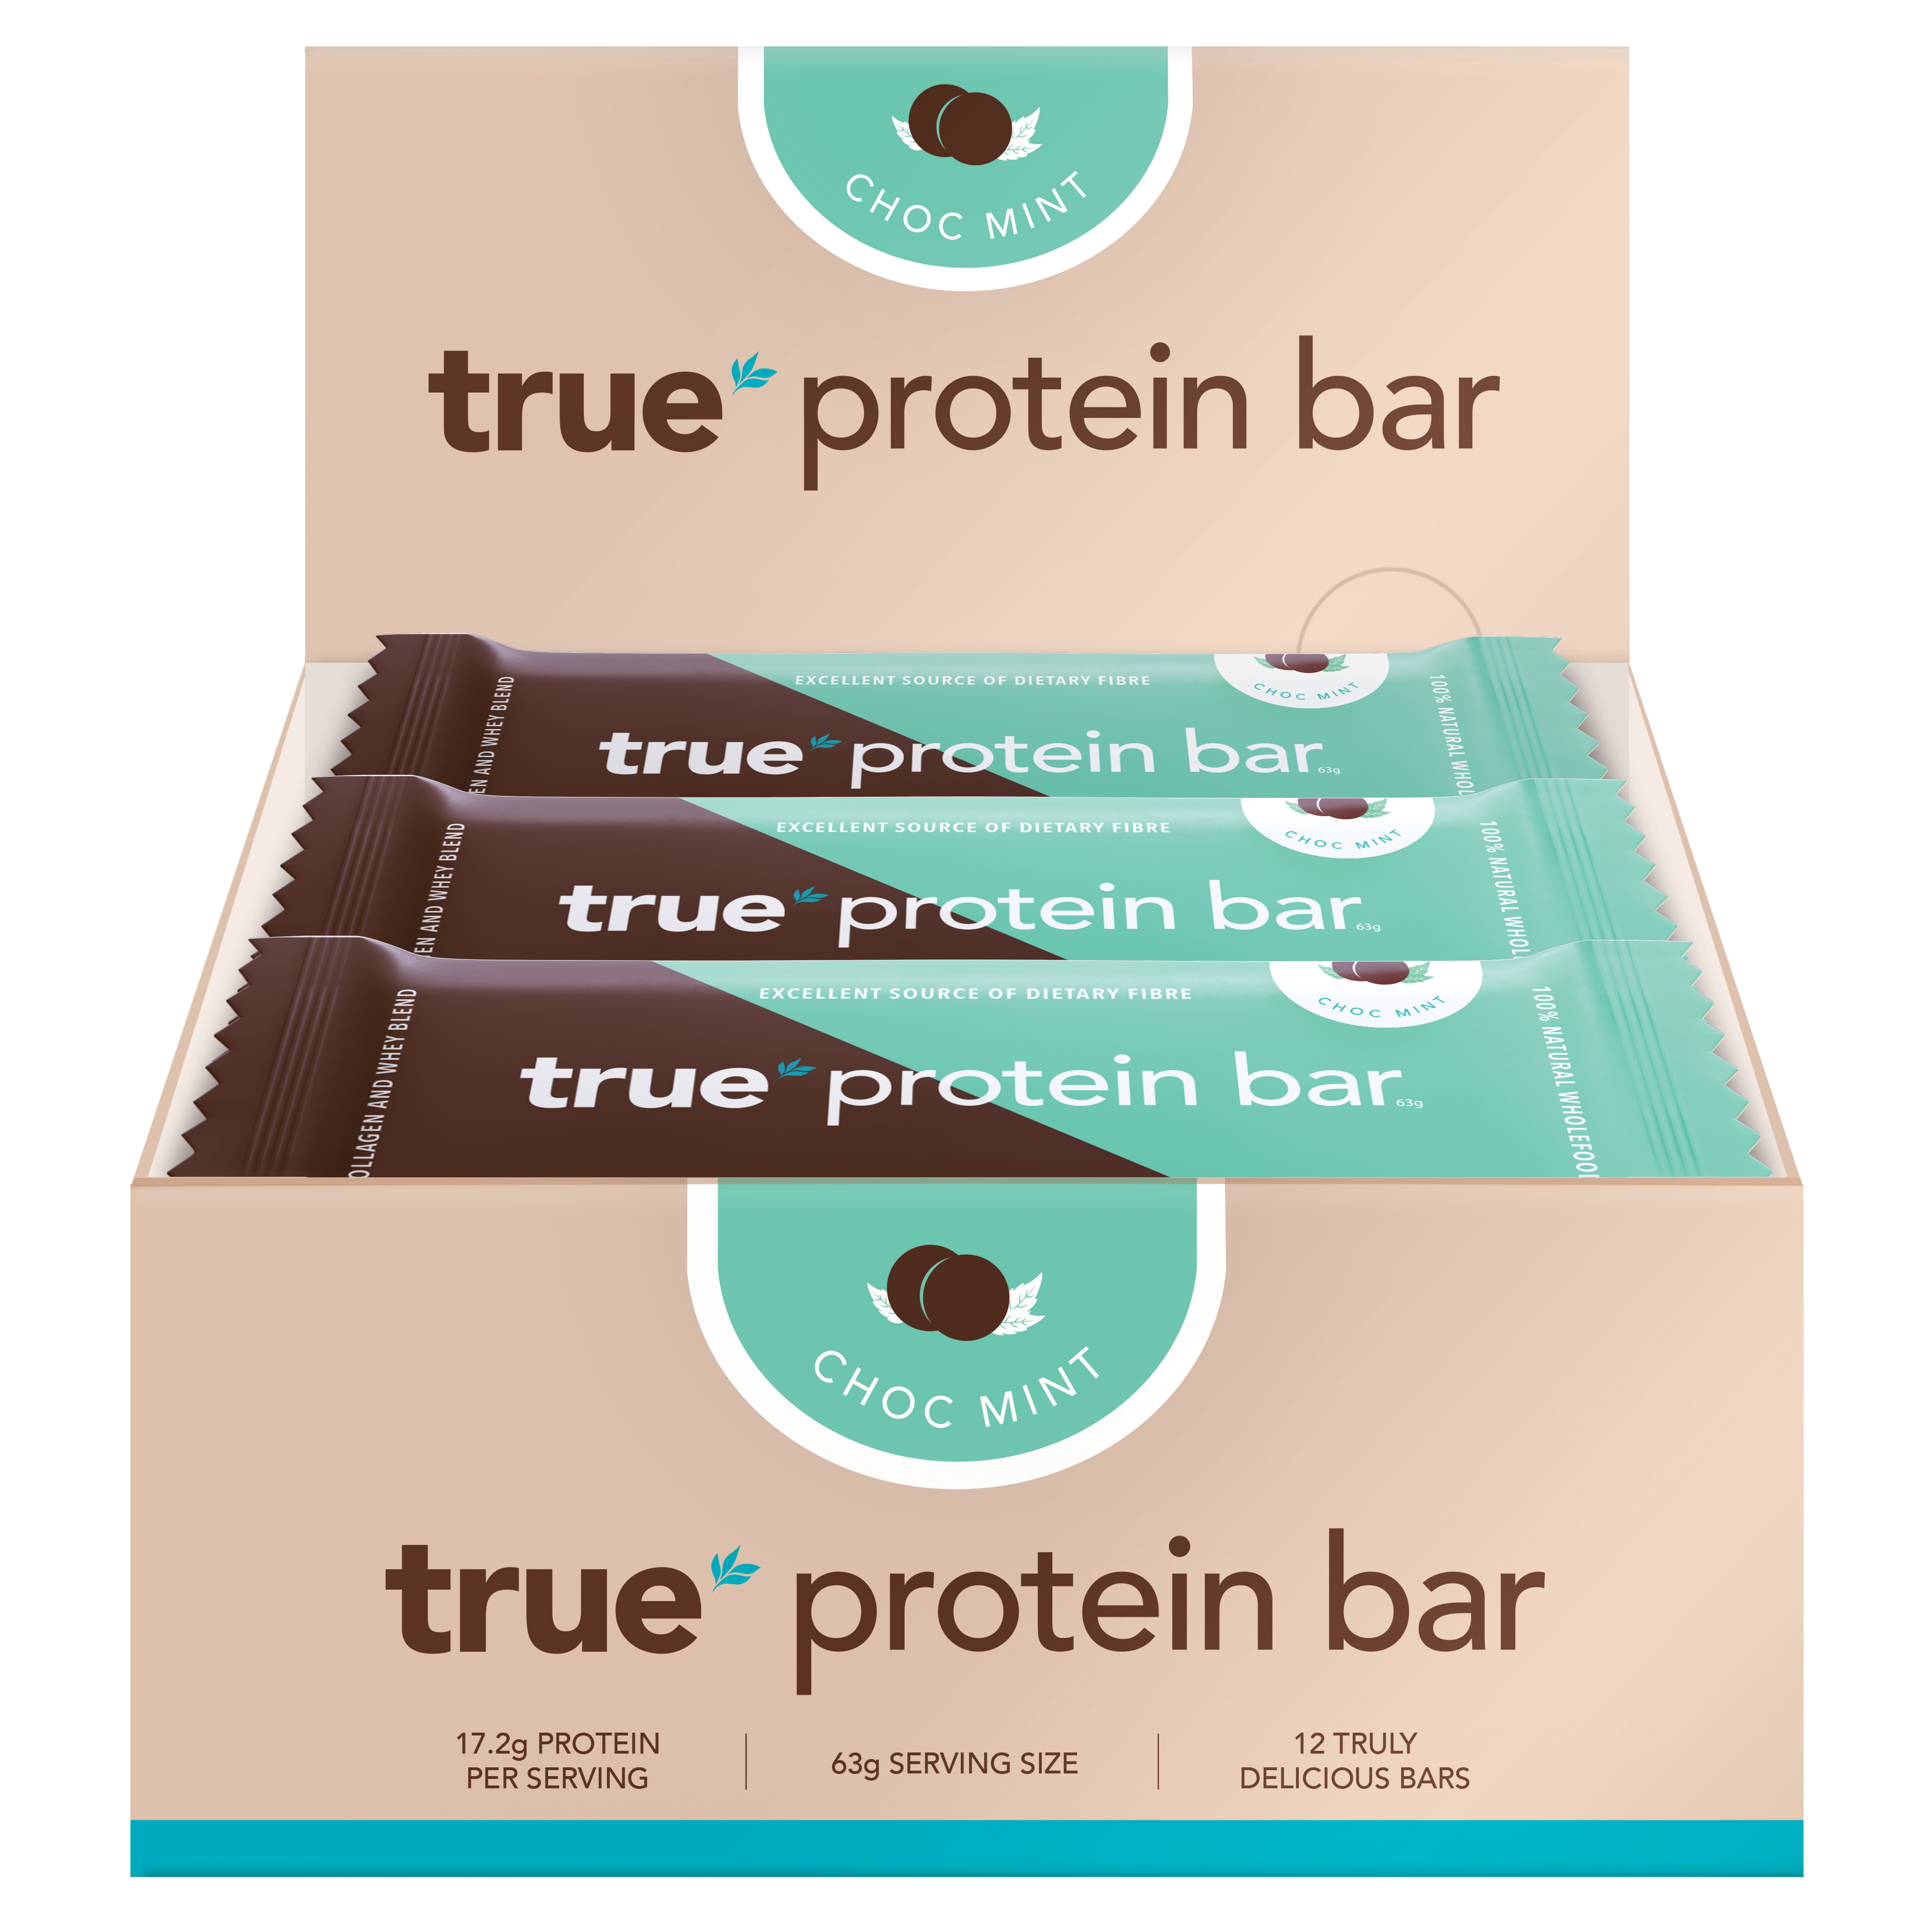 True Protein Bar